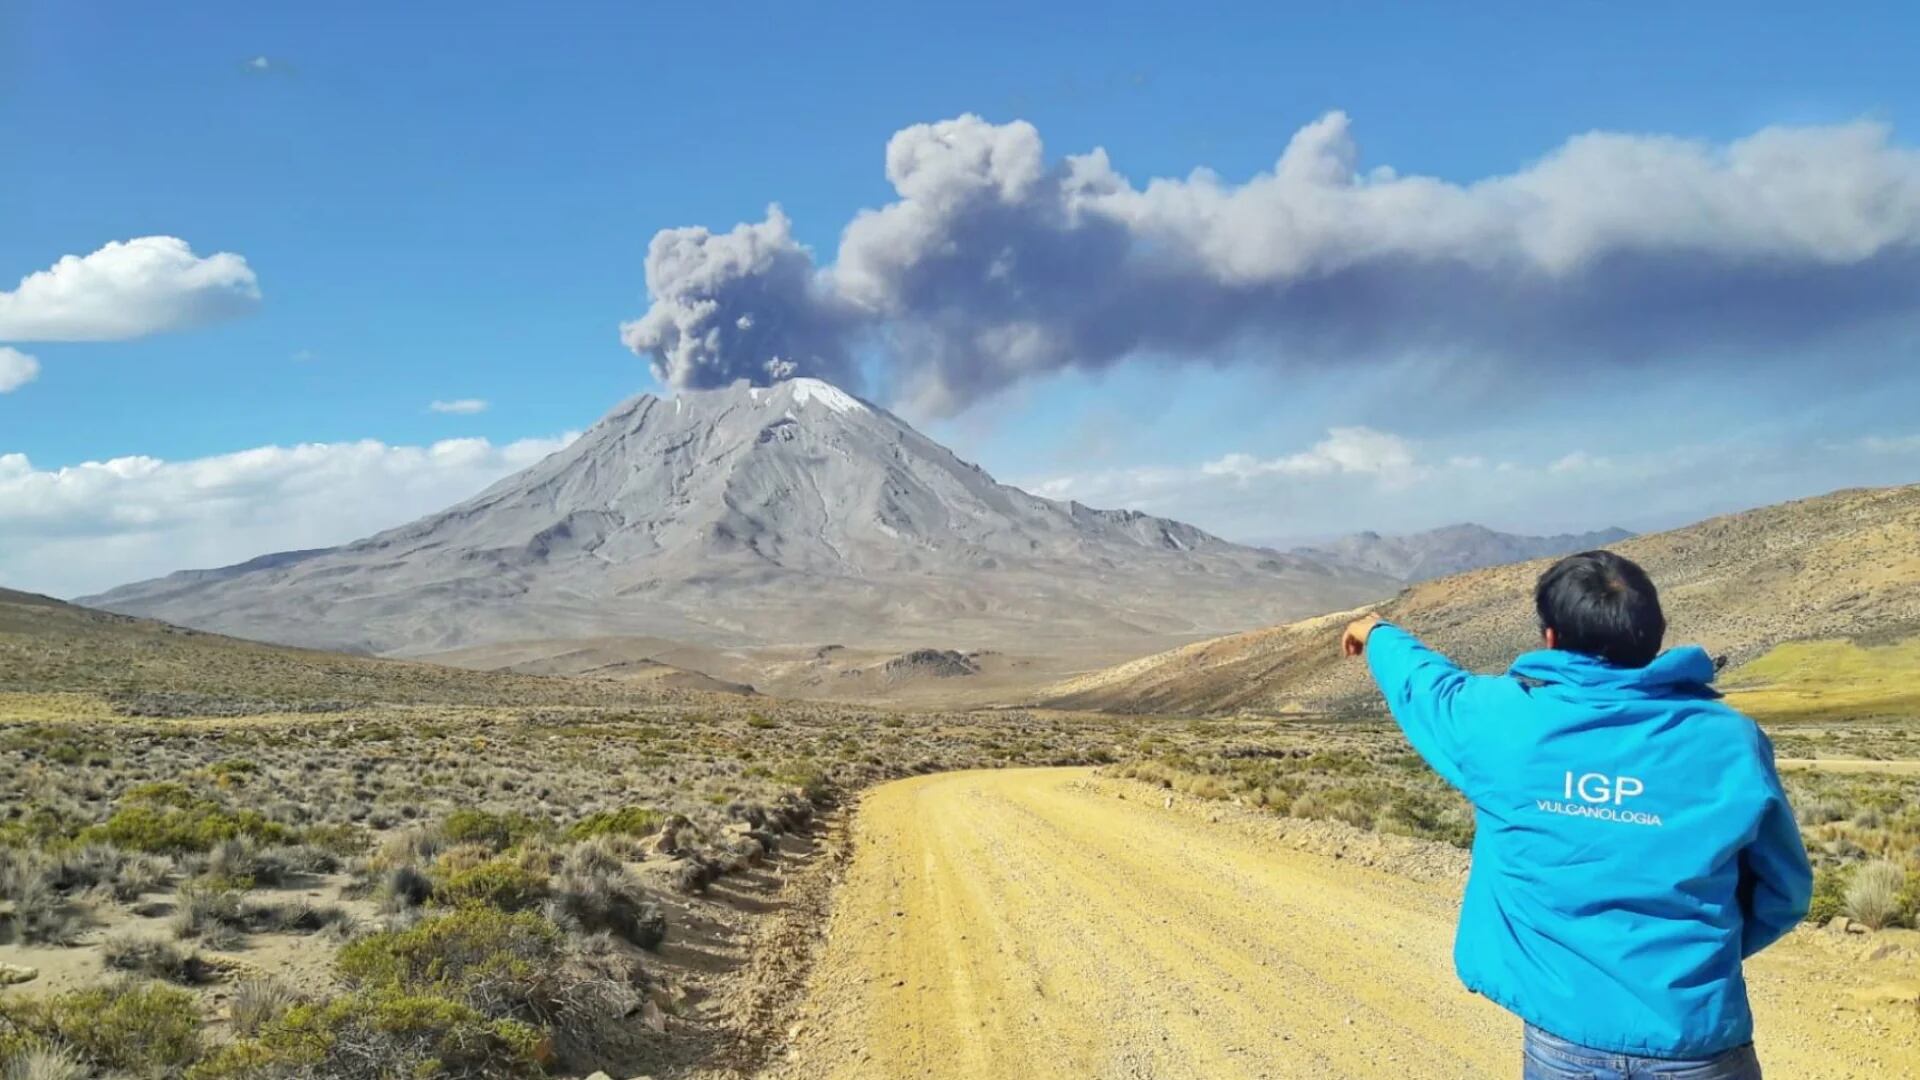 IGP señaló que la erupción del volcán Ubinas alcanzará el nivel 2